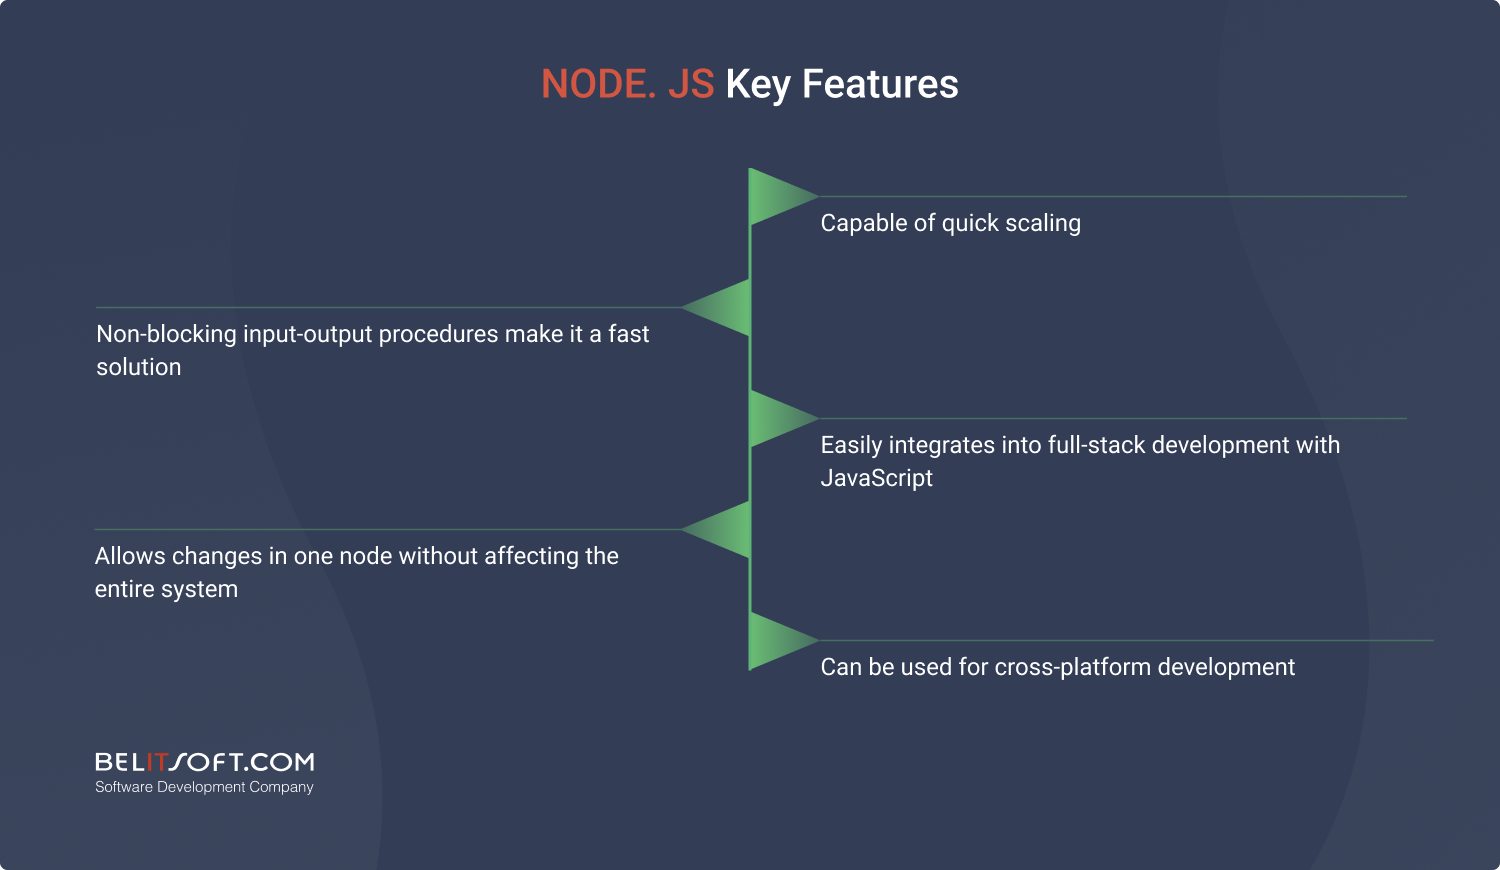 Node.js SaaS development framework